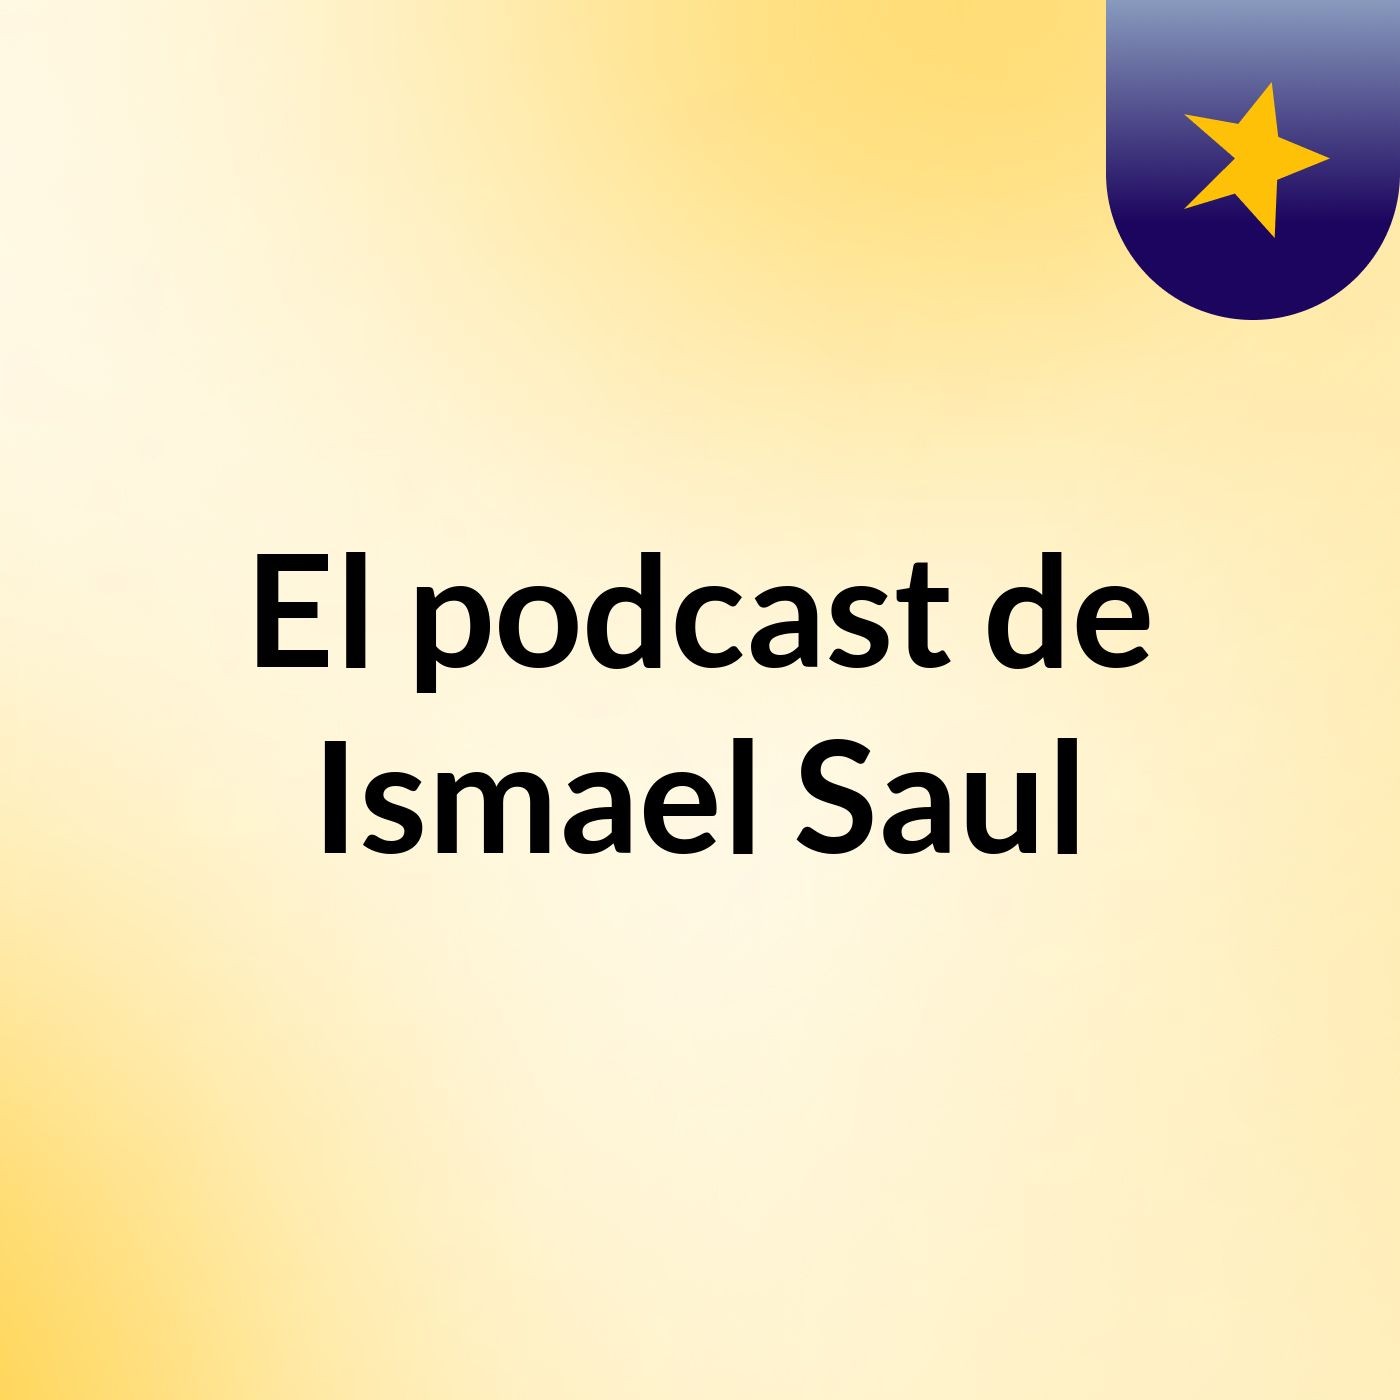 El podcast de Ismael Saul